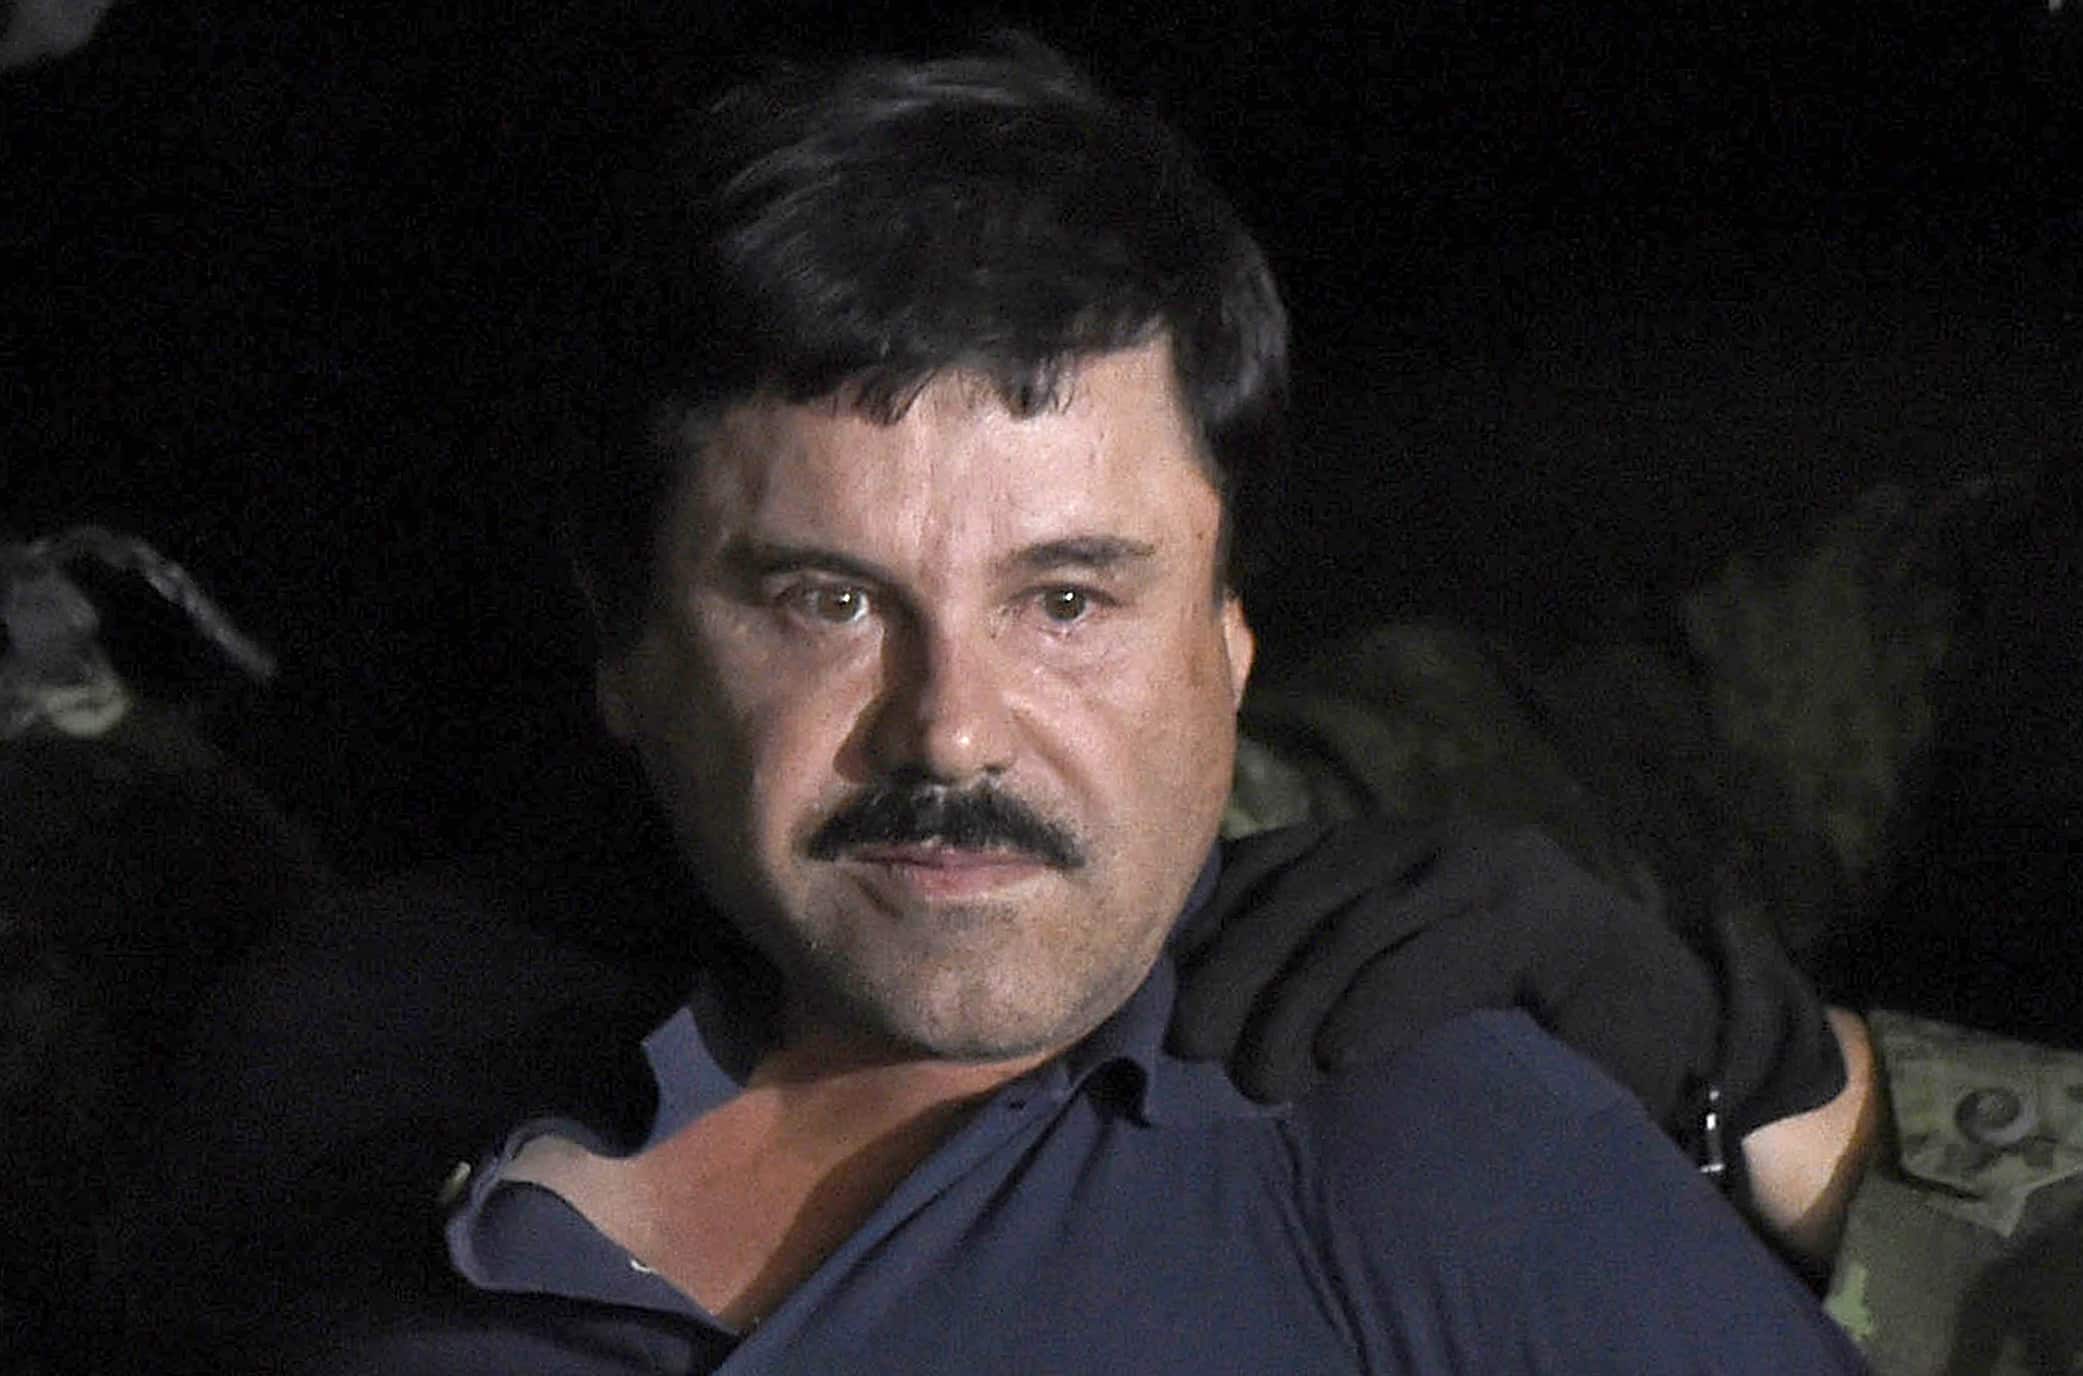 Chapo Guzman extradition